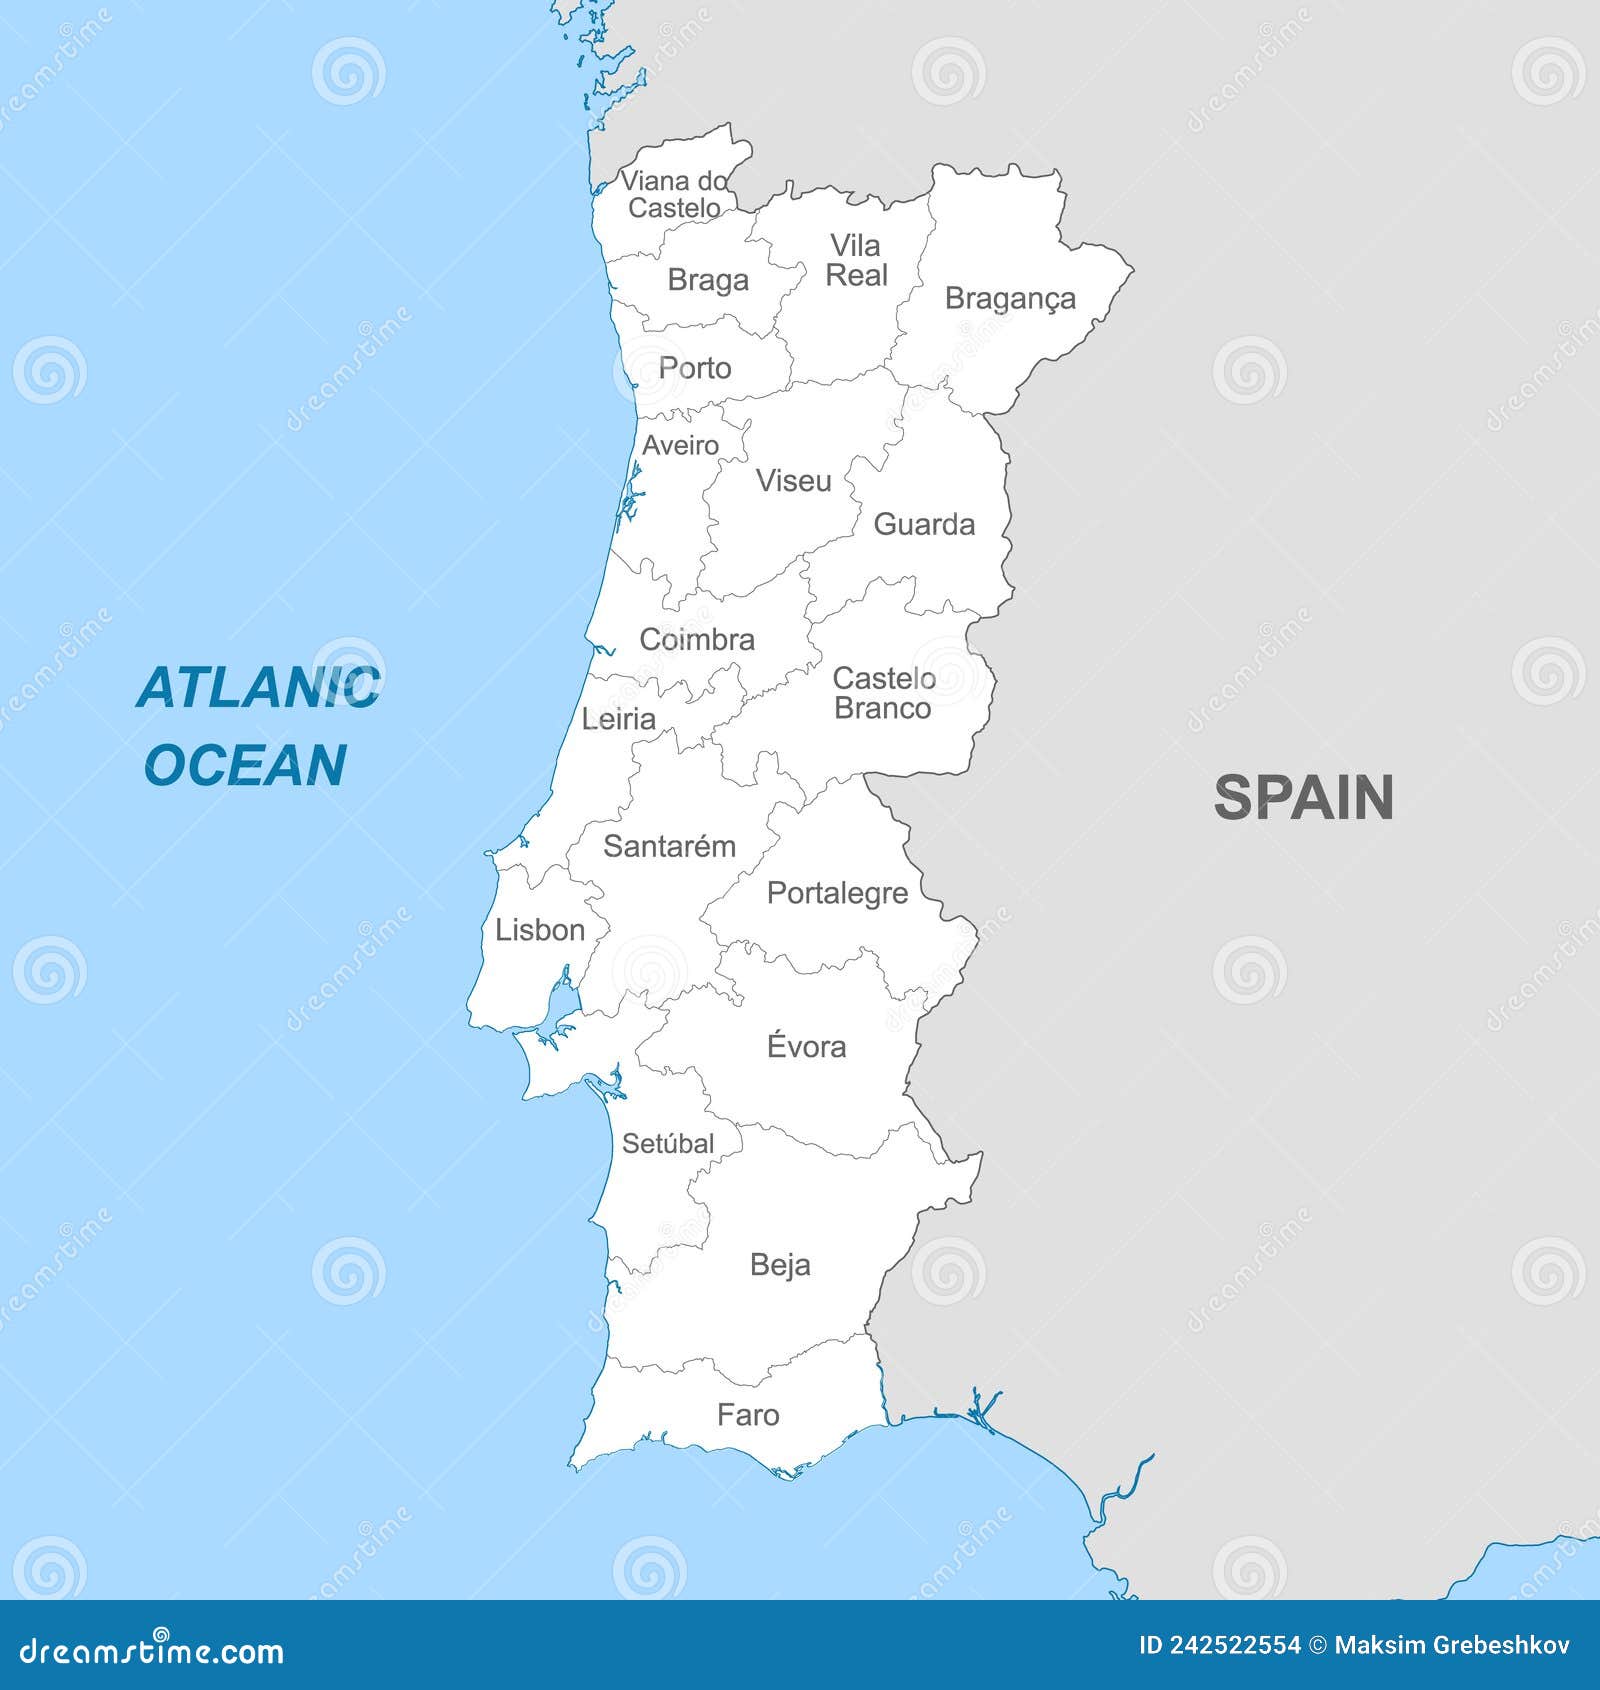 Mapa vetorial político detalhado de portugal